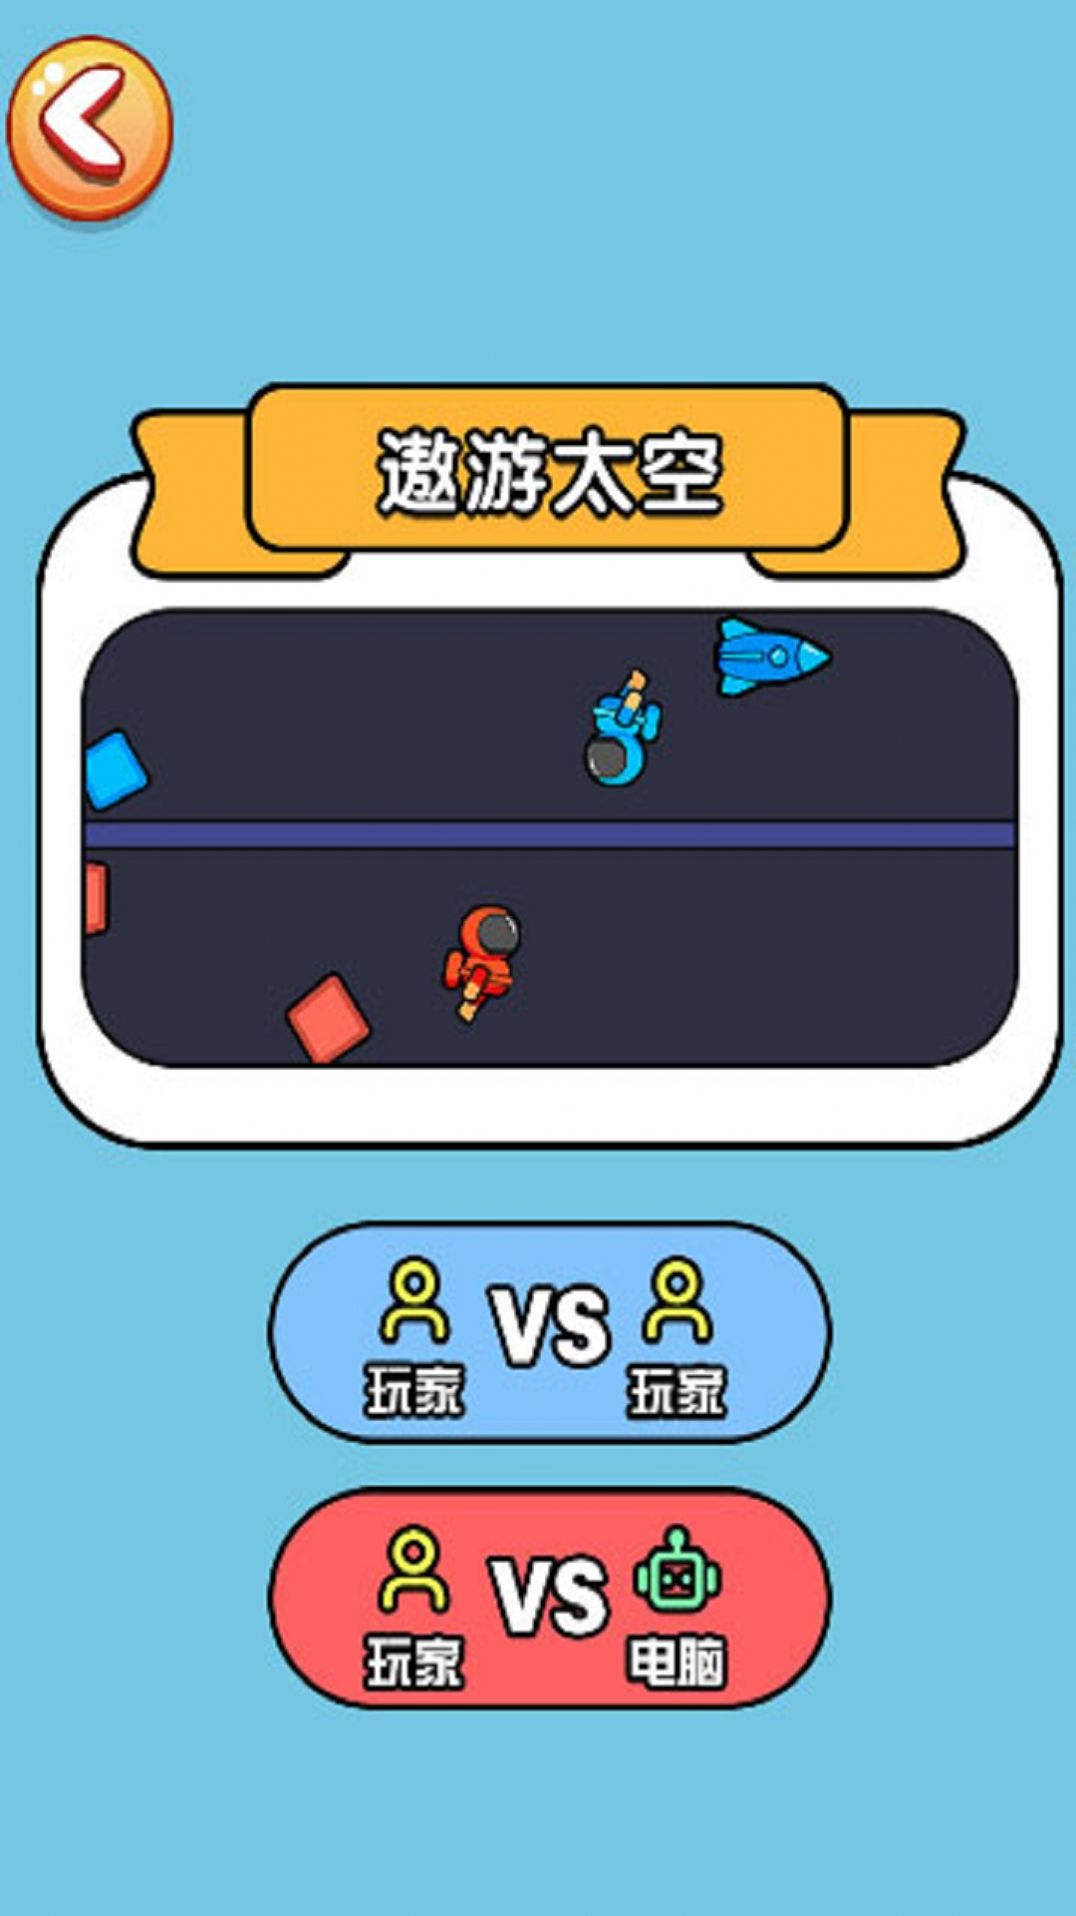 双人决斗赛手机版游戏 v1.0